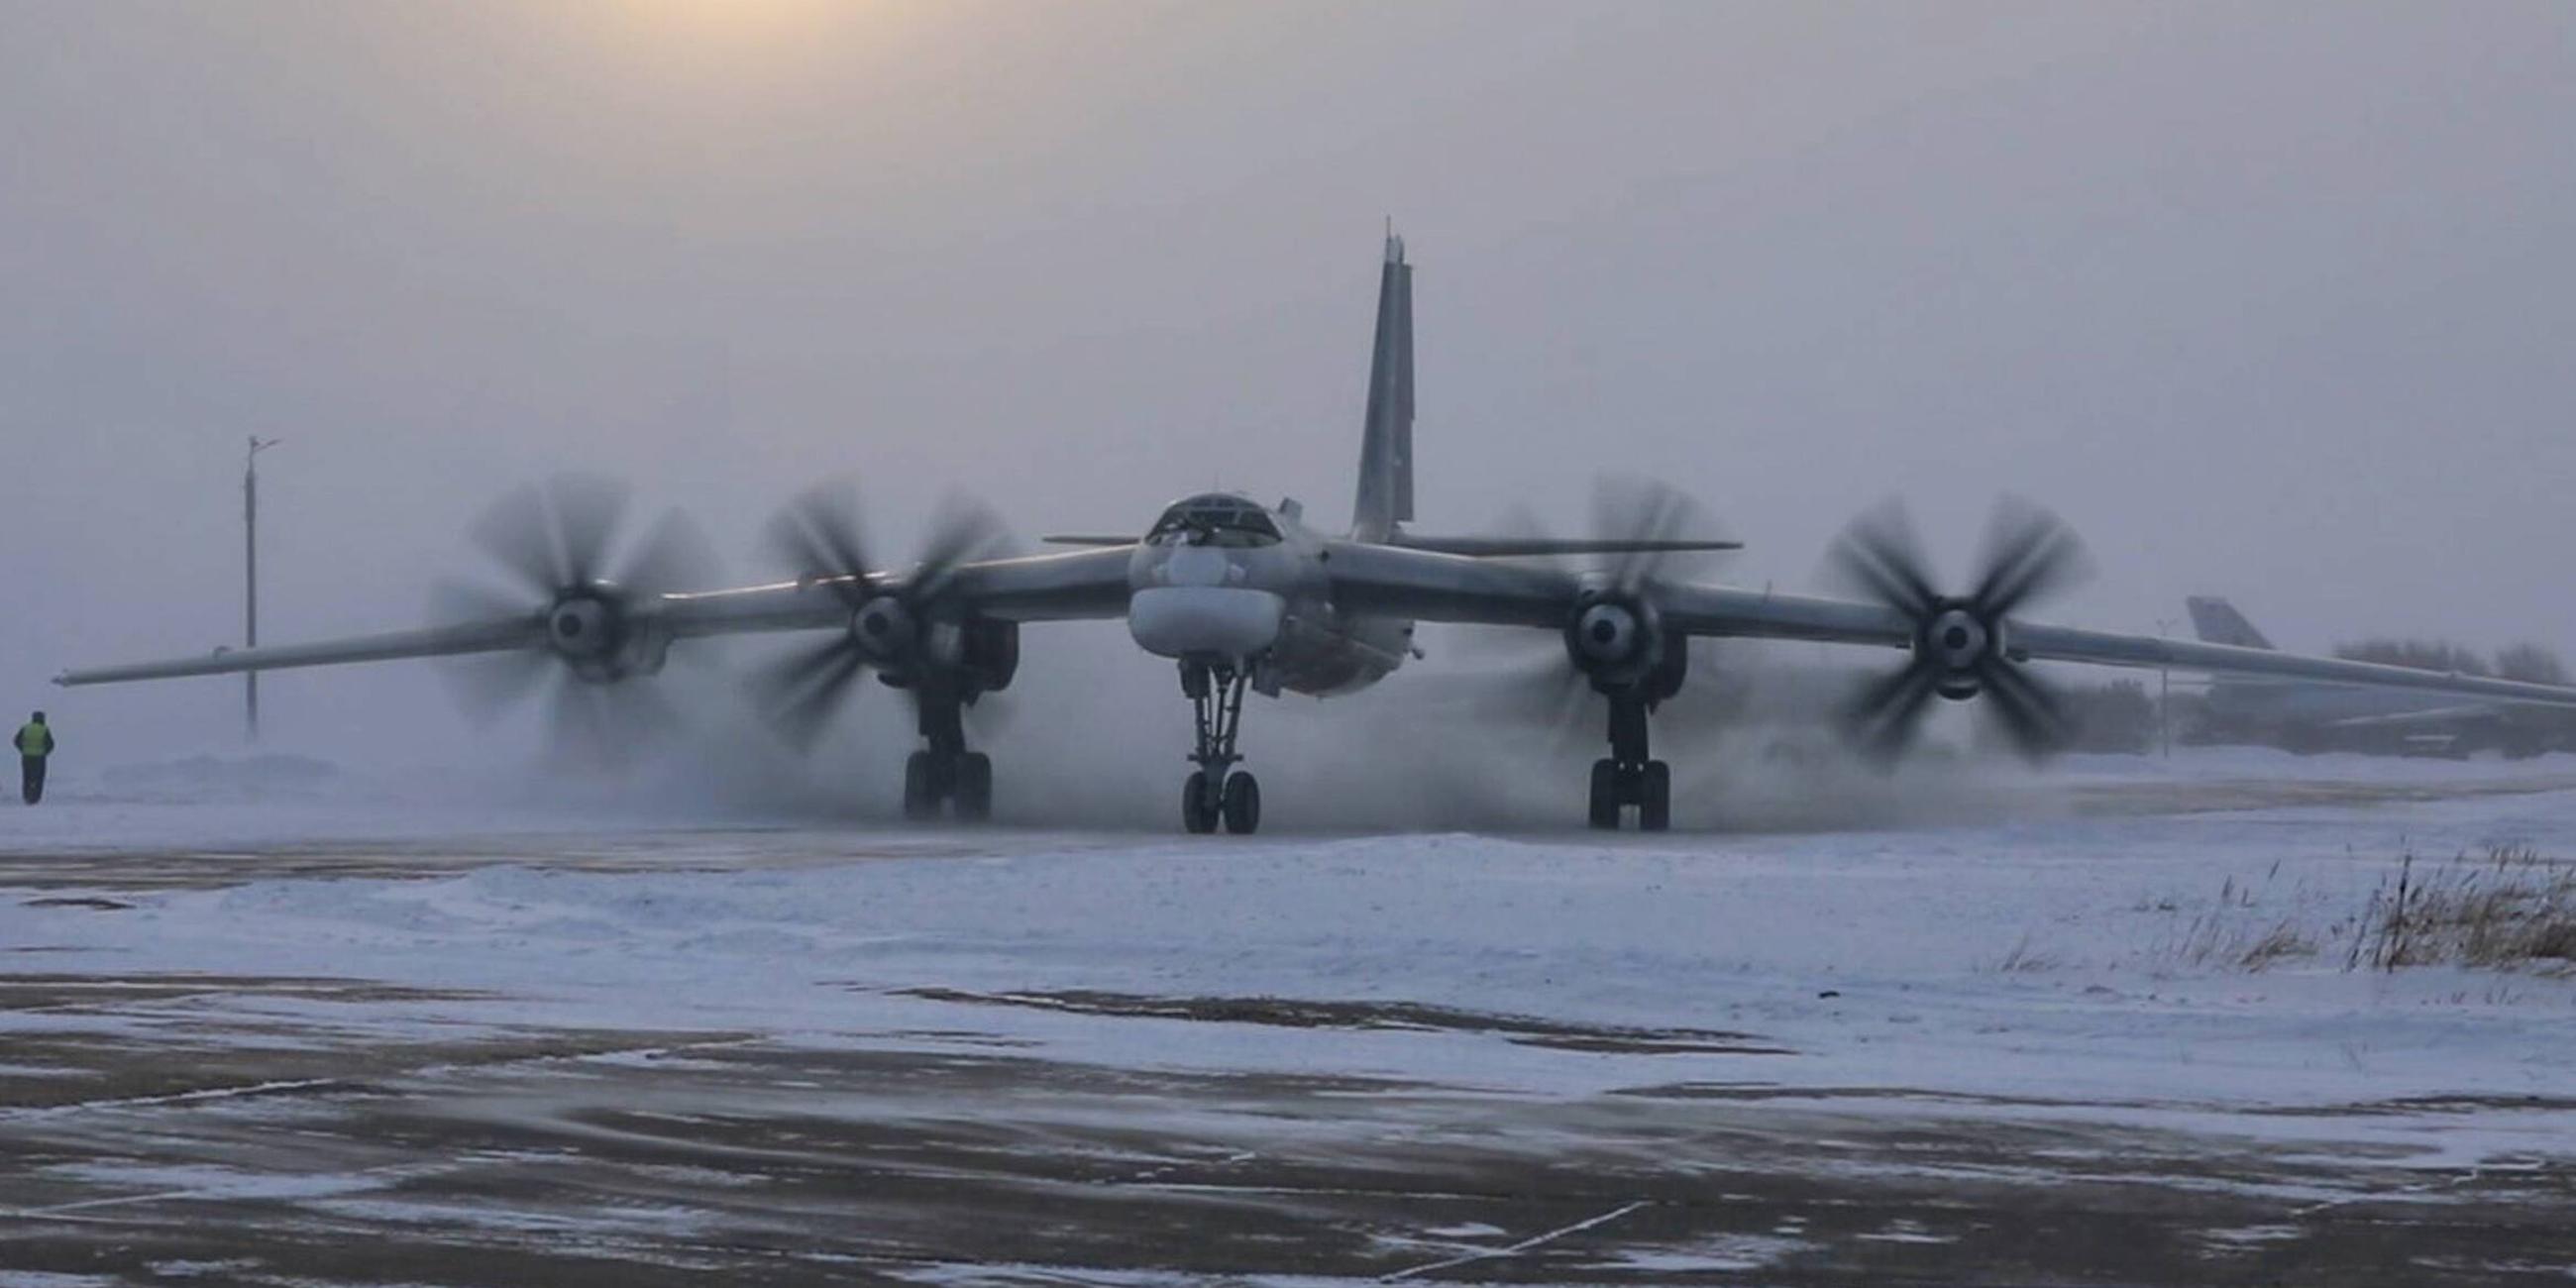 Russlands strategische Bomber Tupolev Tu-95MS